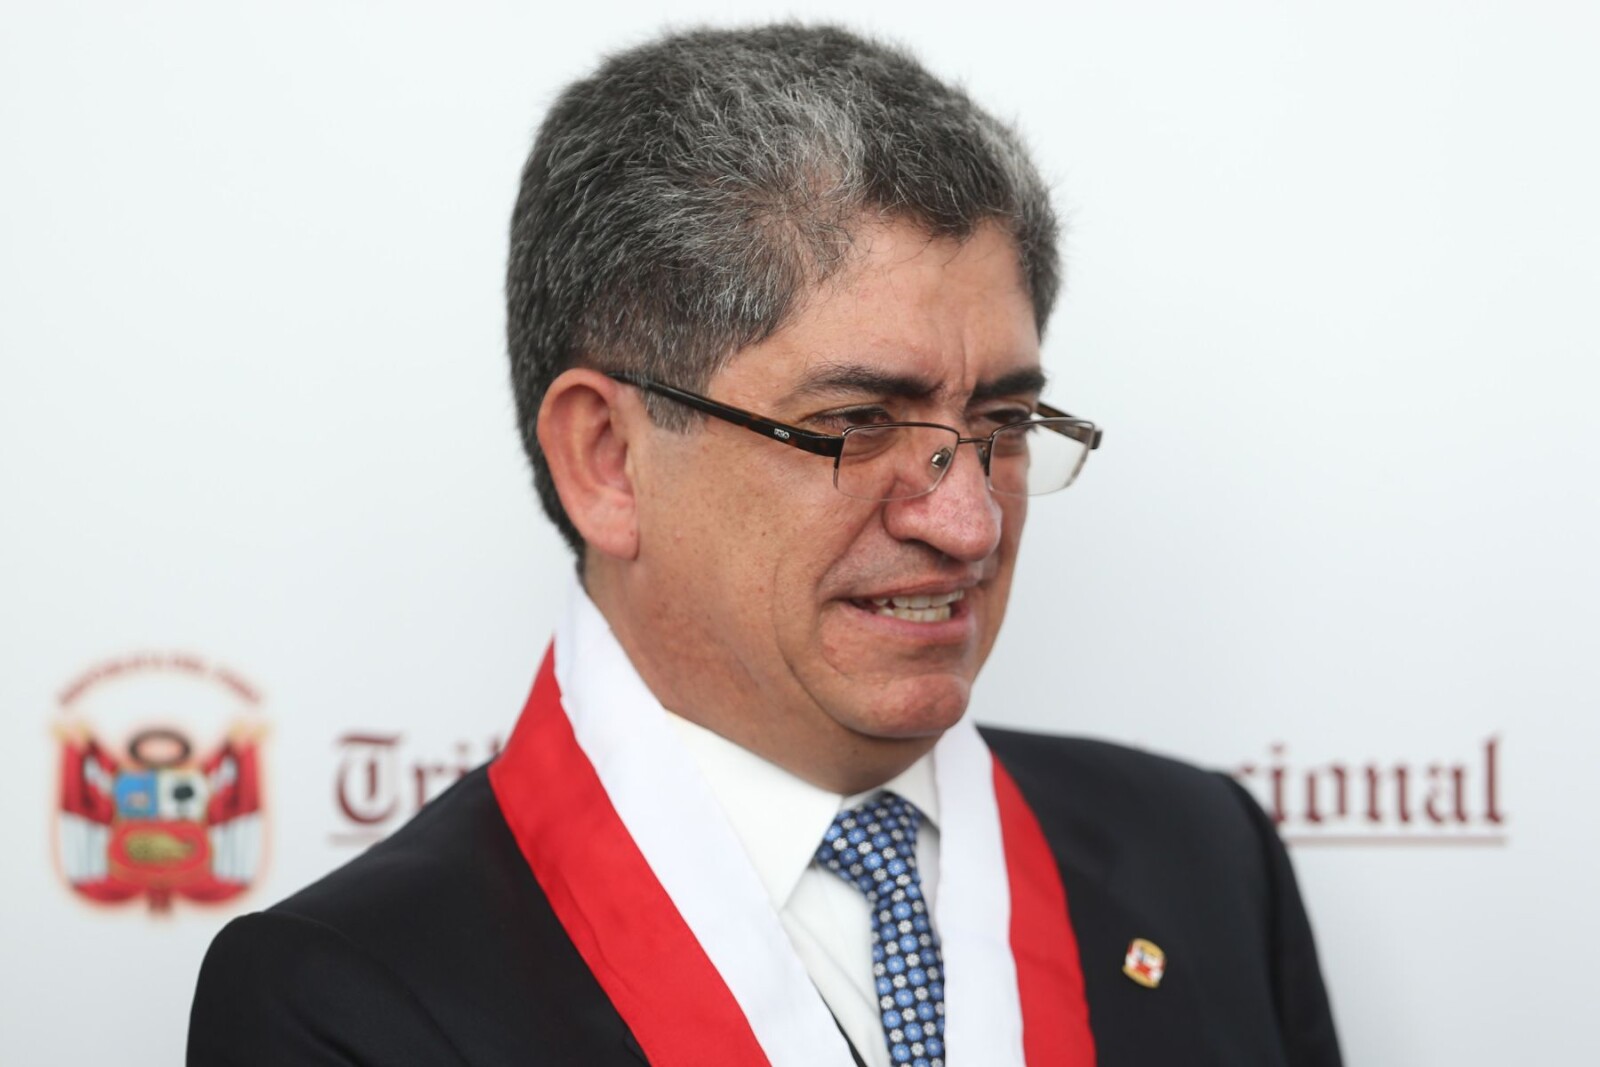 Jorge Luis Sardón